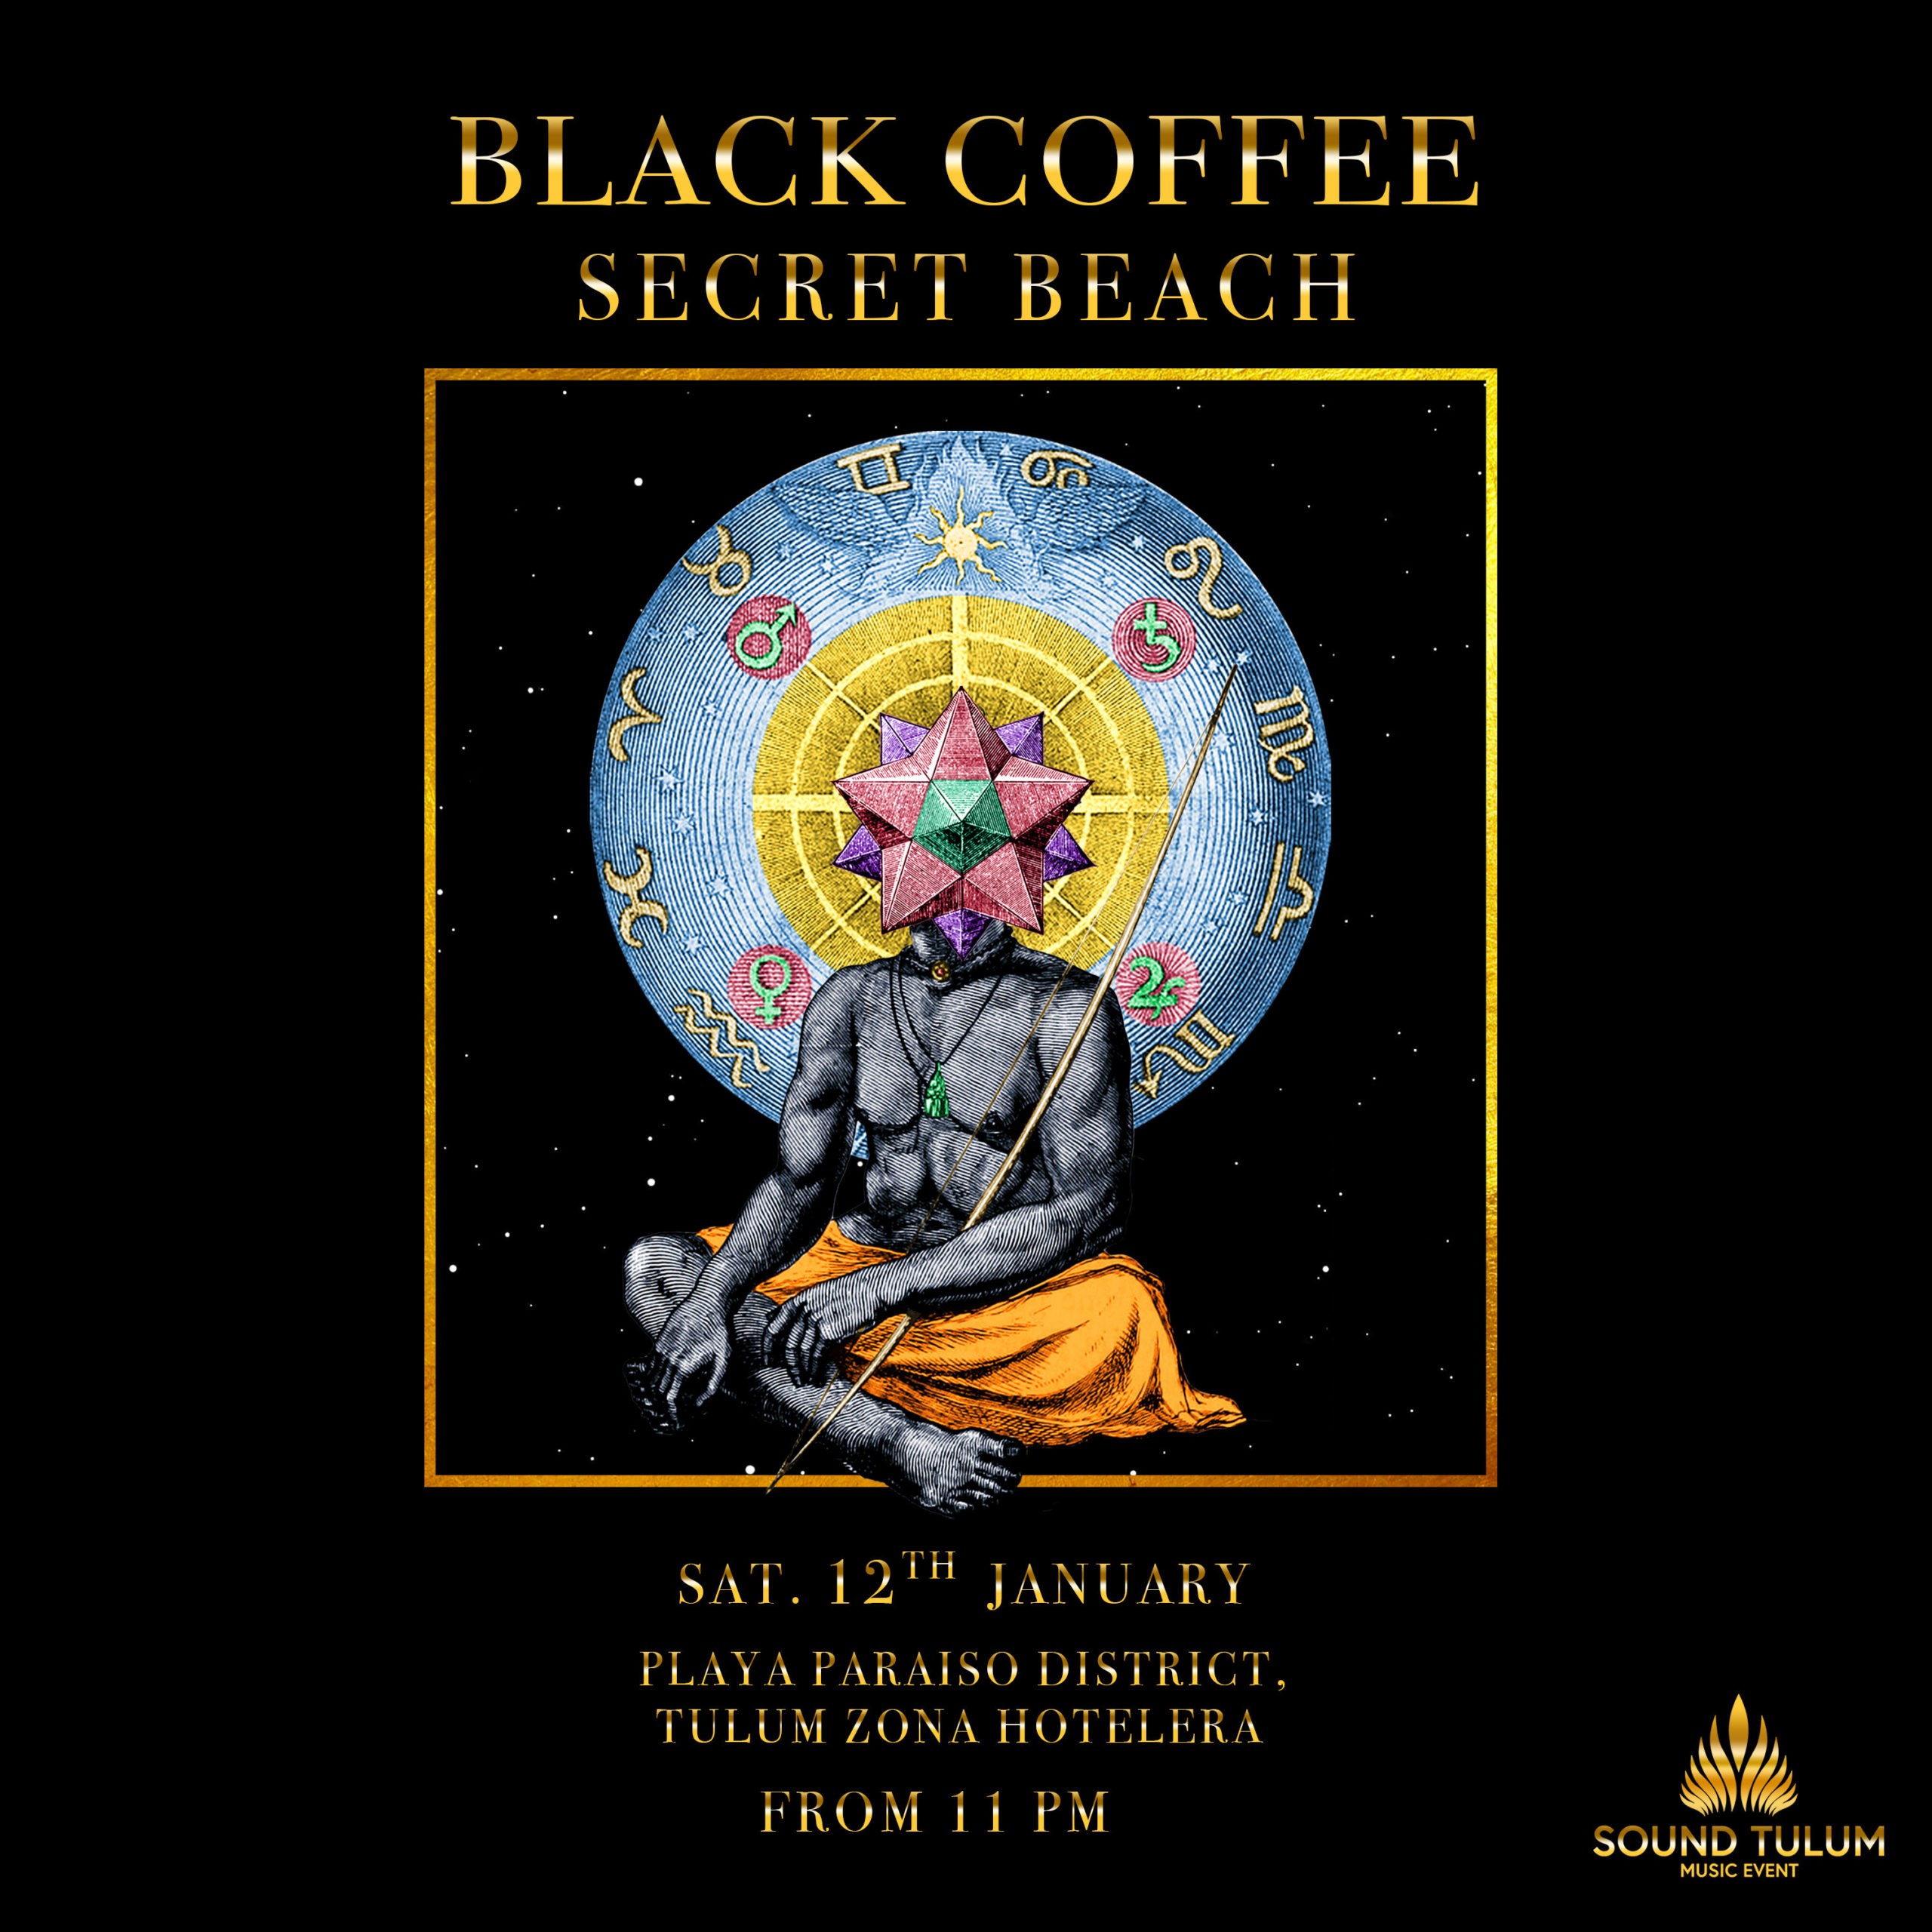 ¡Sound Tulum confirma a Black Coffee para protagonizar un evento “Secreto”!